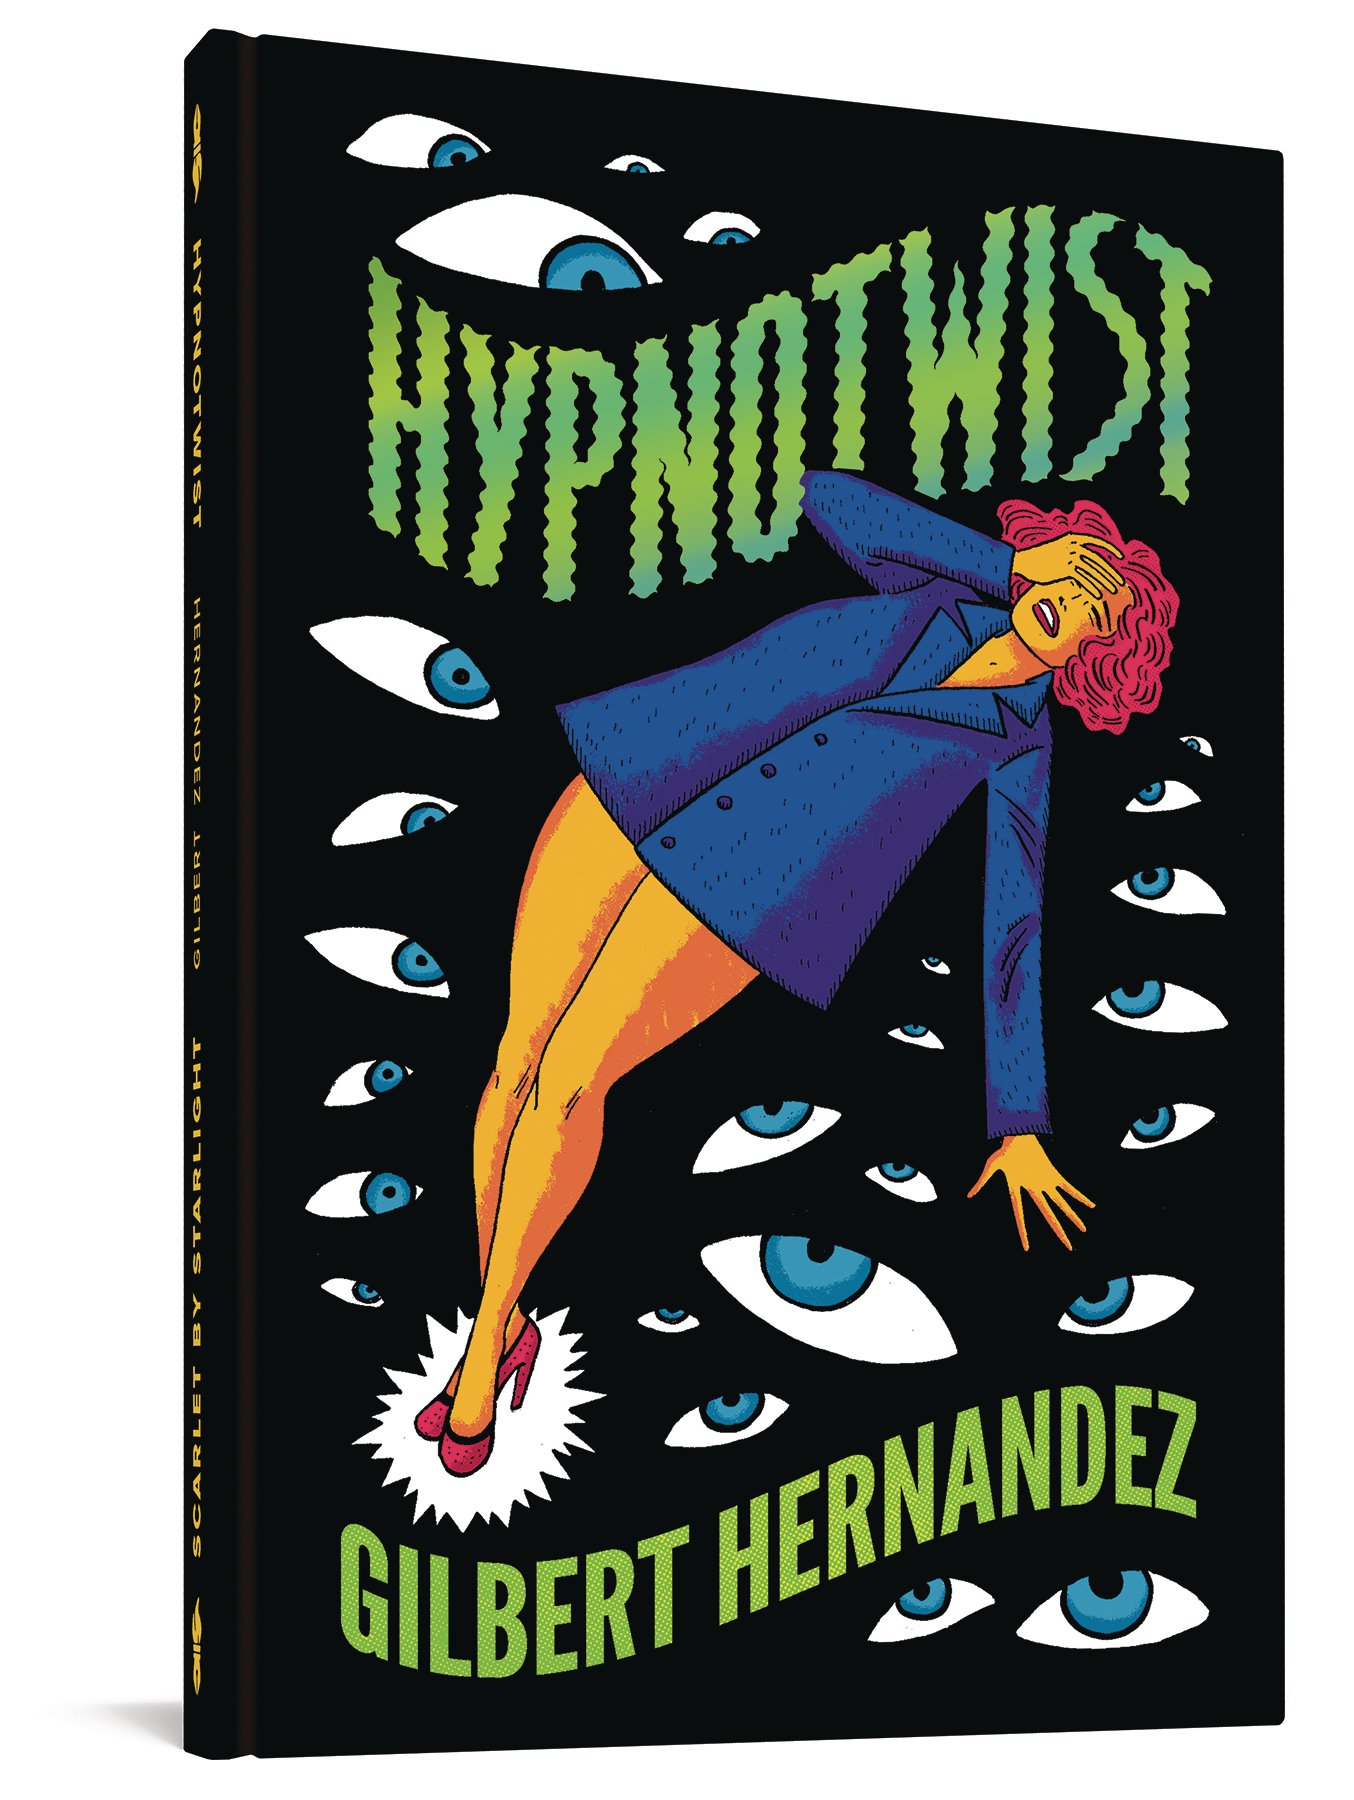 Hernandez Hypnotwist Hardcover